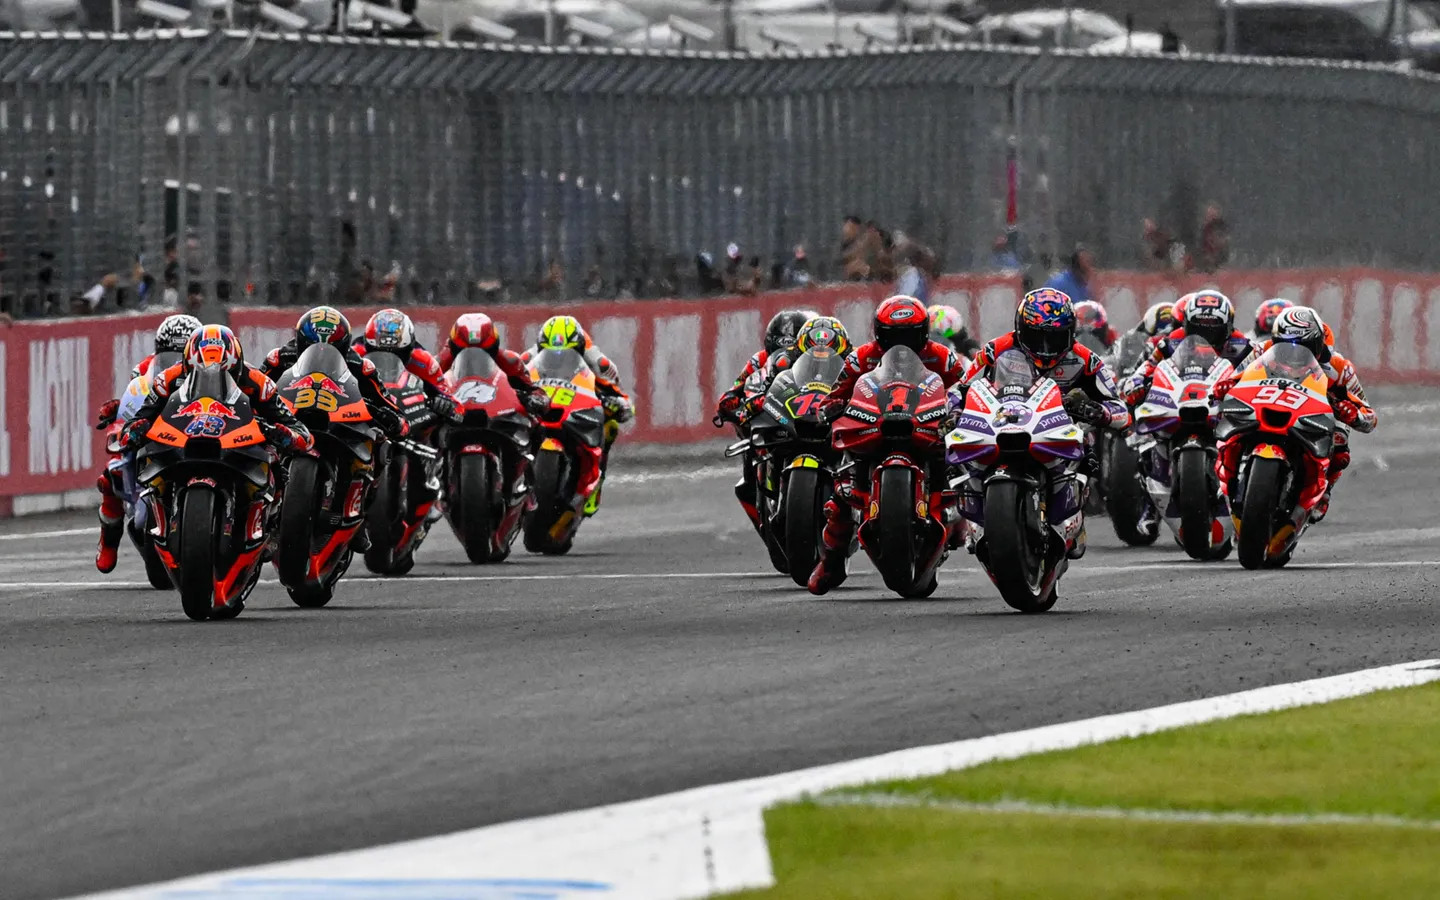 Jadwal Lengkap MotoGP Indonesia 2023 Bisa Cek di Sini!